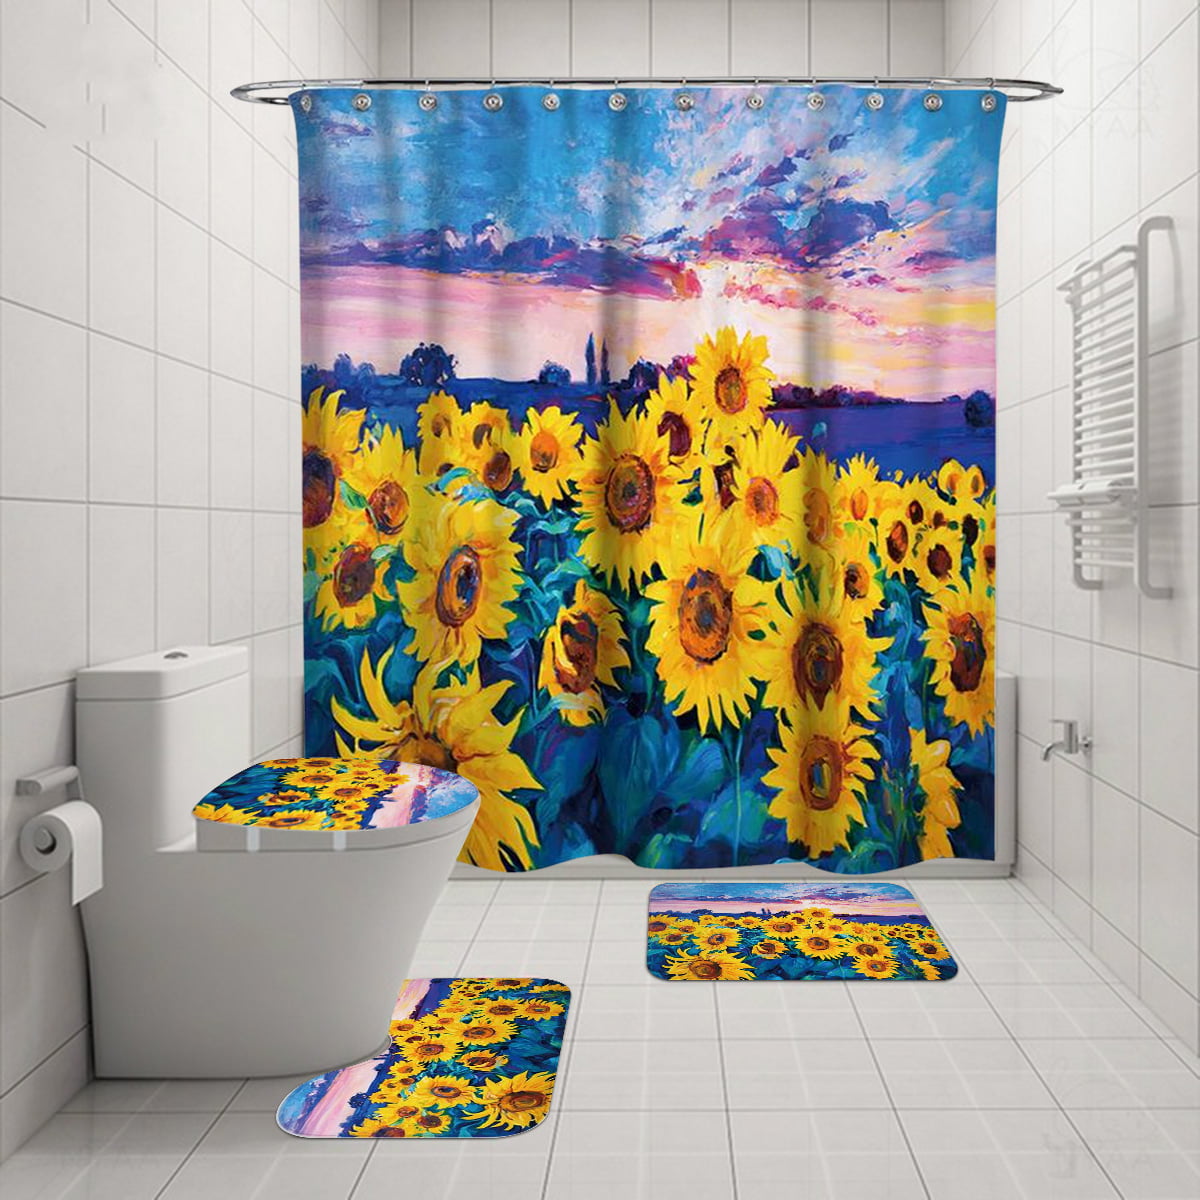 71x71" Waterproof Fabric Shower Curtain & Bath Mat 12 Hooks Set New Art Design 